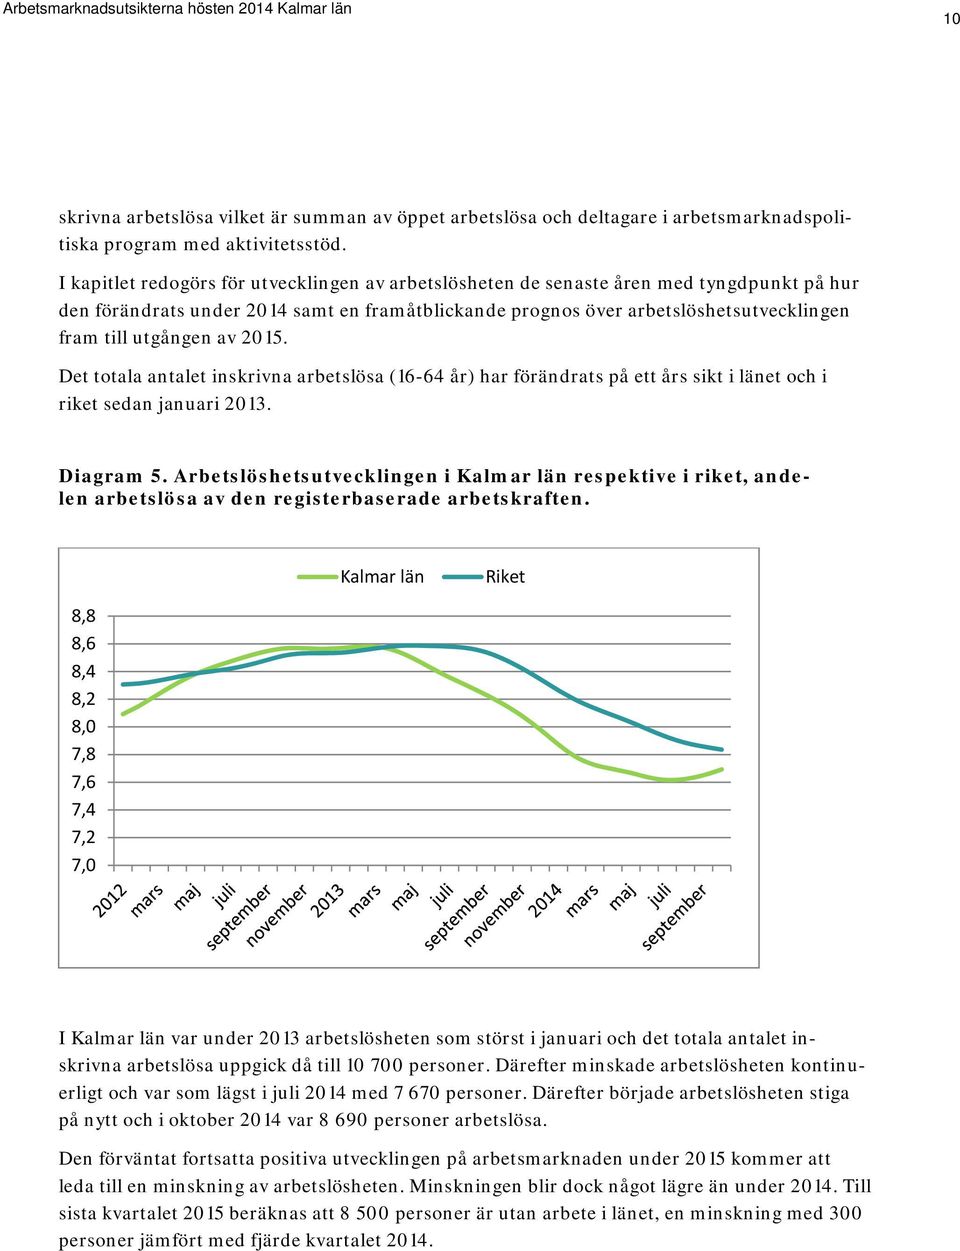 utgången av 2015. Det totala antalet inskrivna arbetslösa (16-64 år) har förändrats på ett års sikt i länet och i riket sedan januari 2013. Diagram 5.